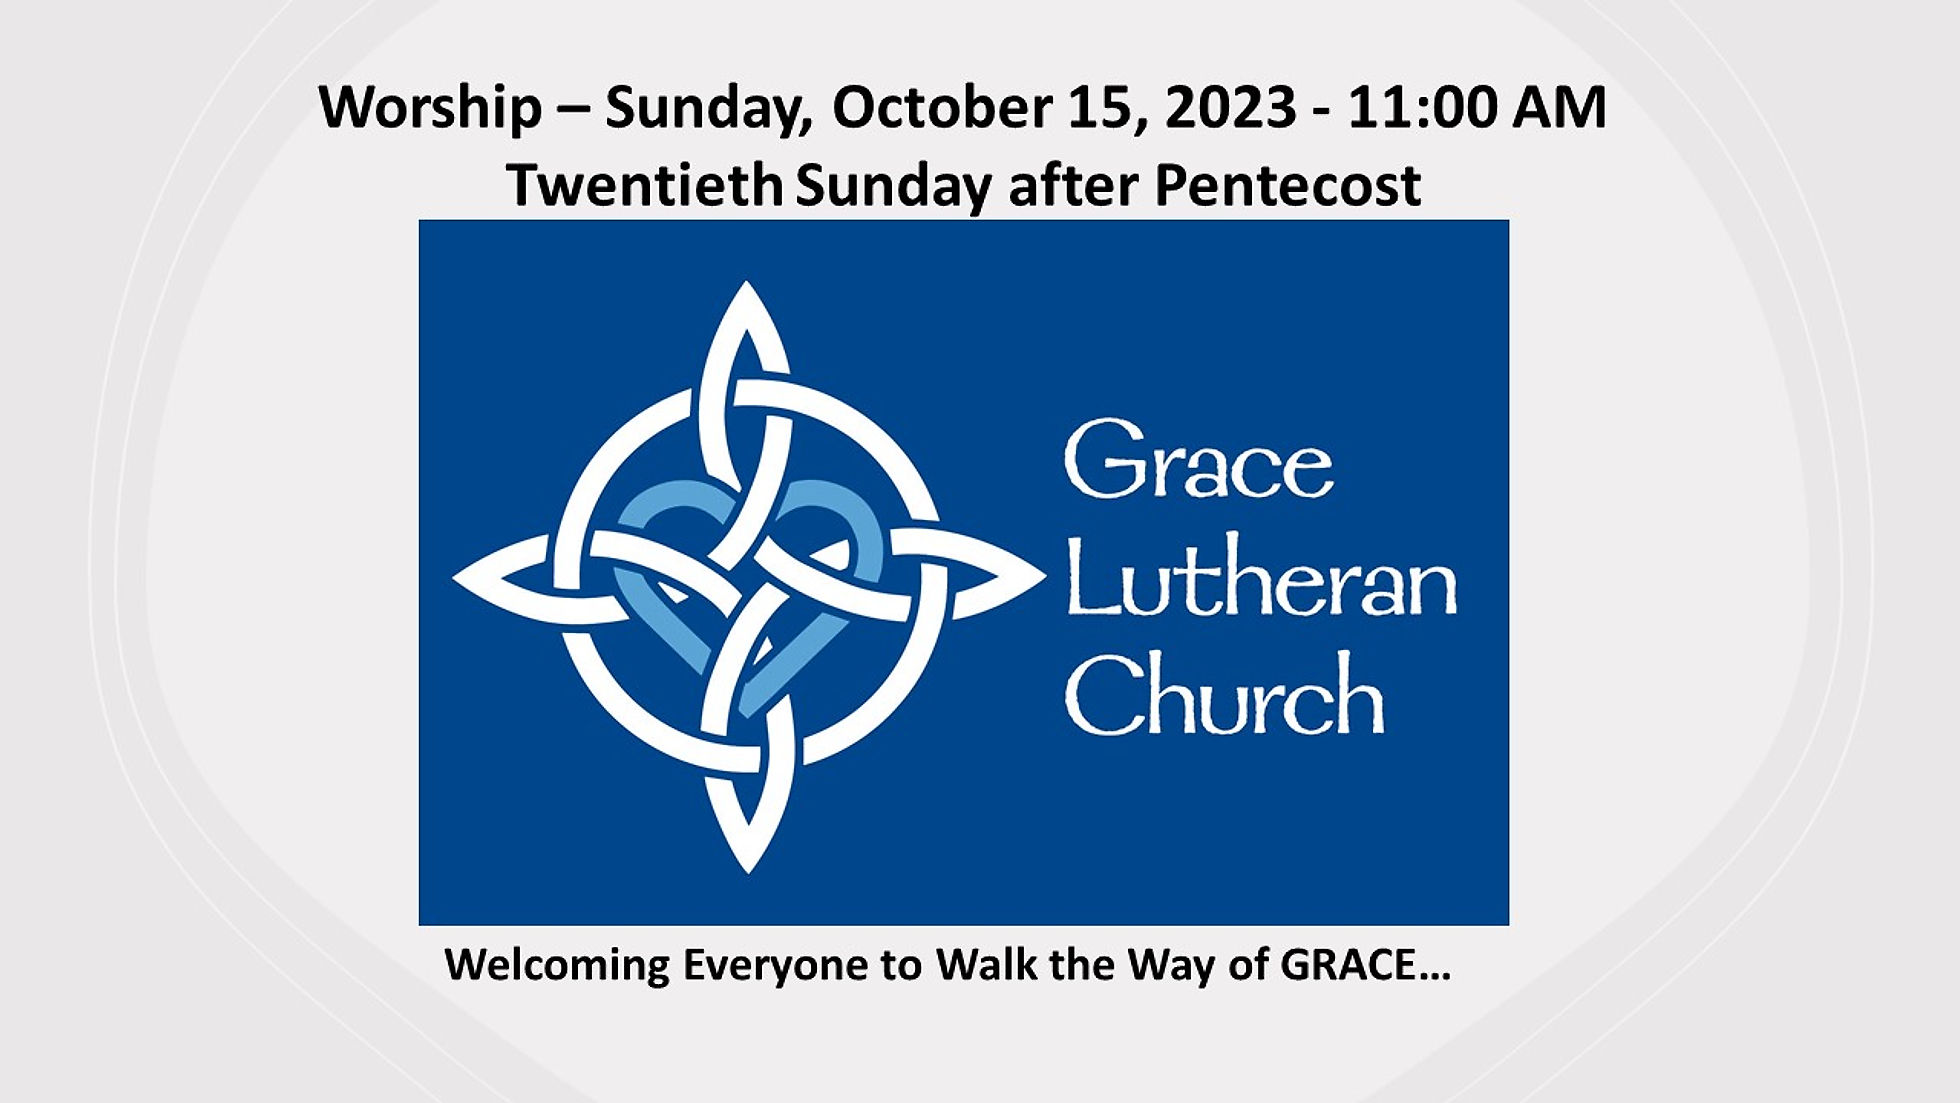 Sunday, October 15, 2023 - Twentieth Sunday after Pentecost